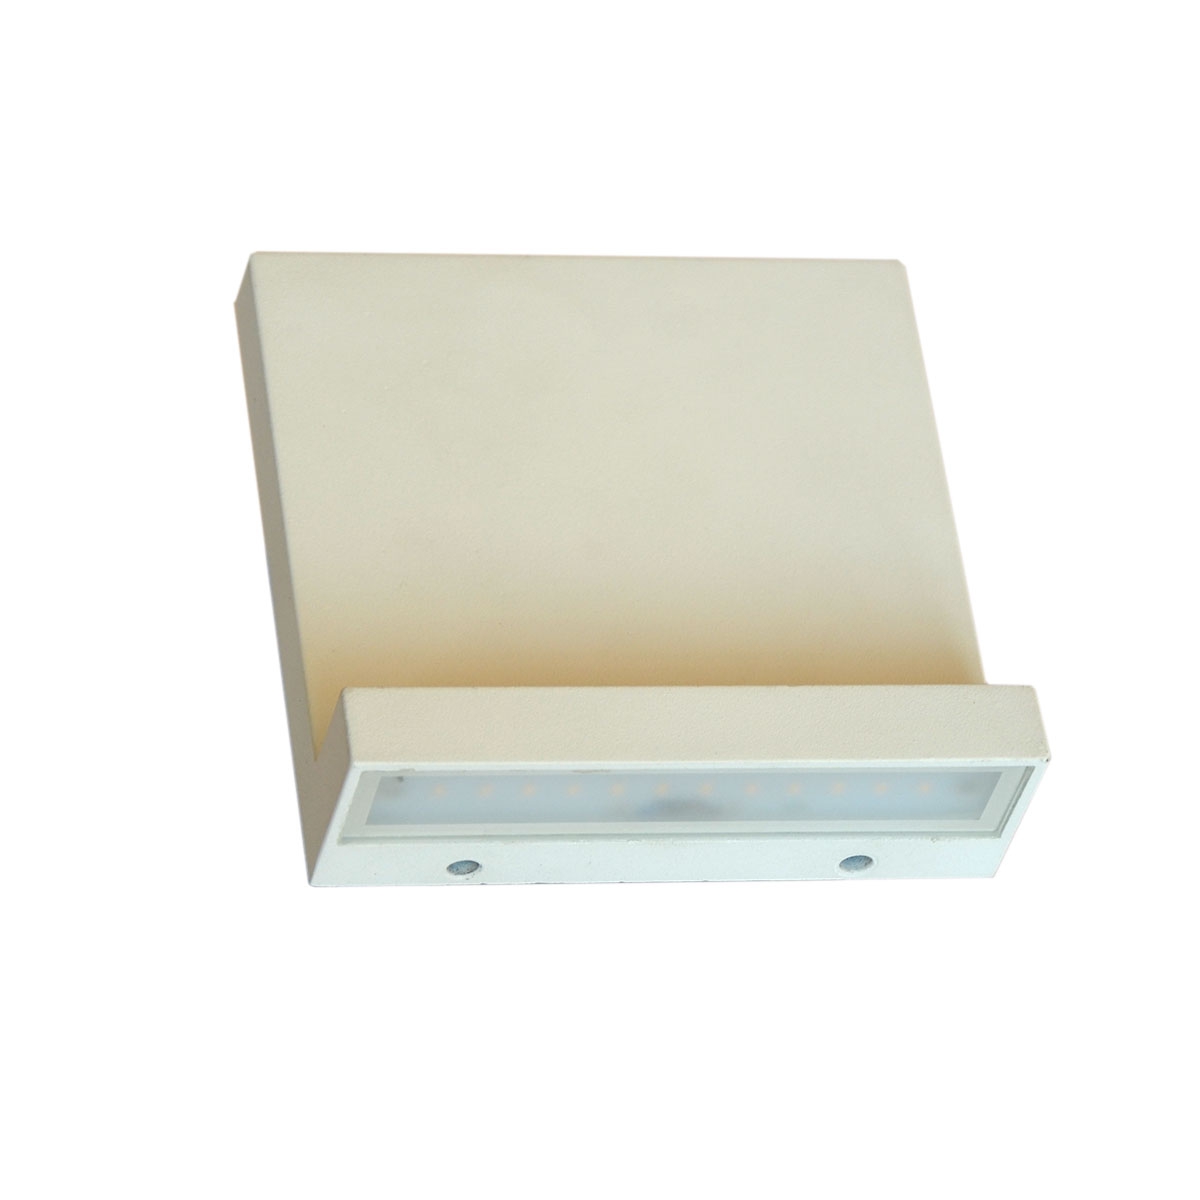 الأضاءة داخلية و خارجية / أضاءة حائط - موفر للطاقة اللون الخارجي أبيض H1132A - White